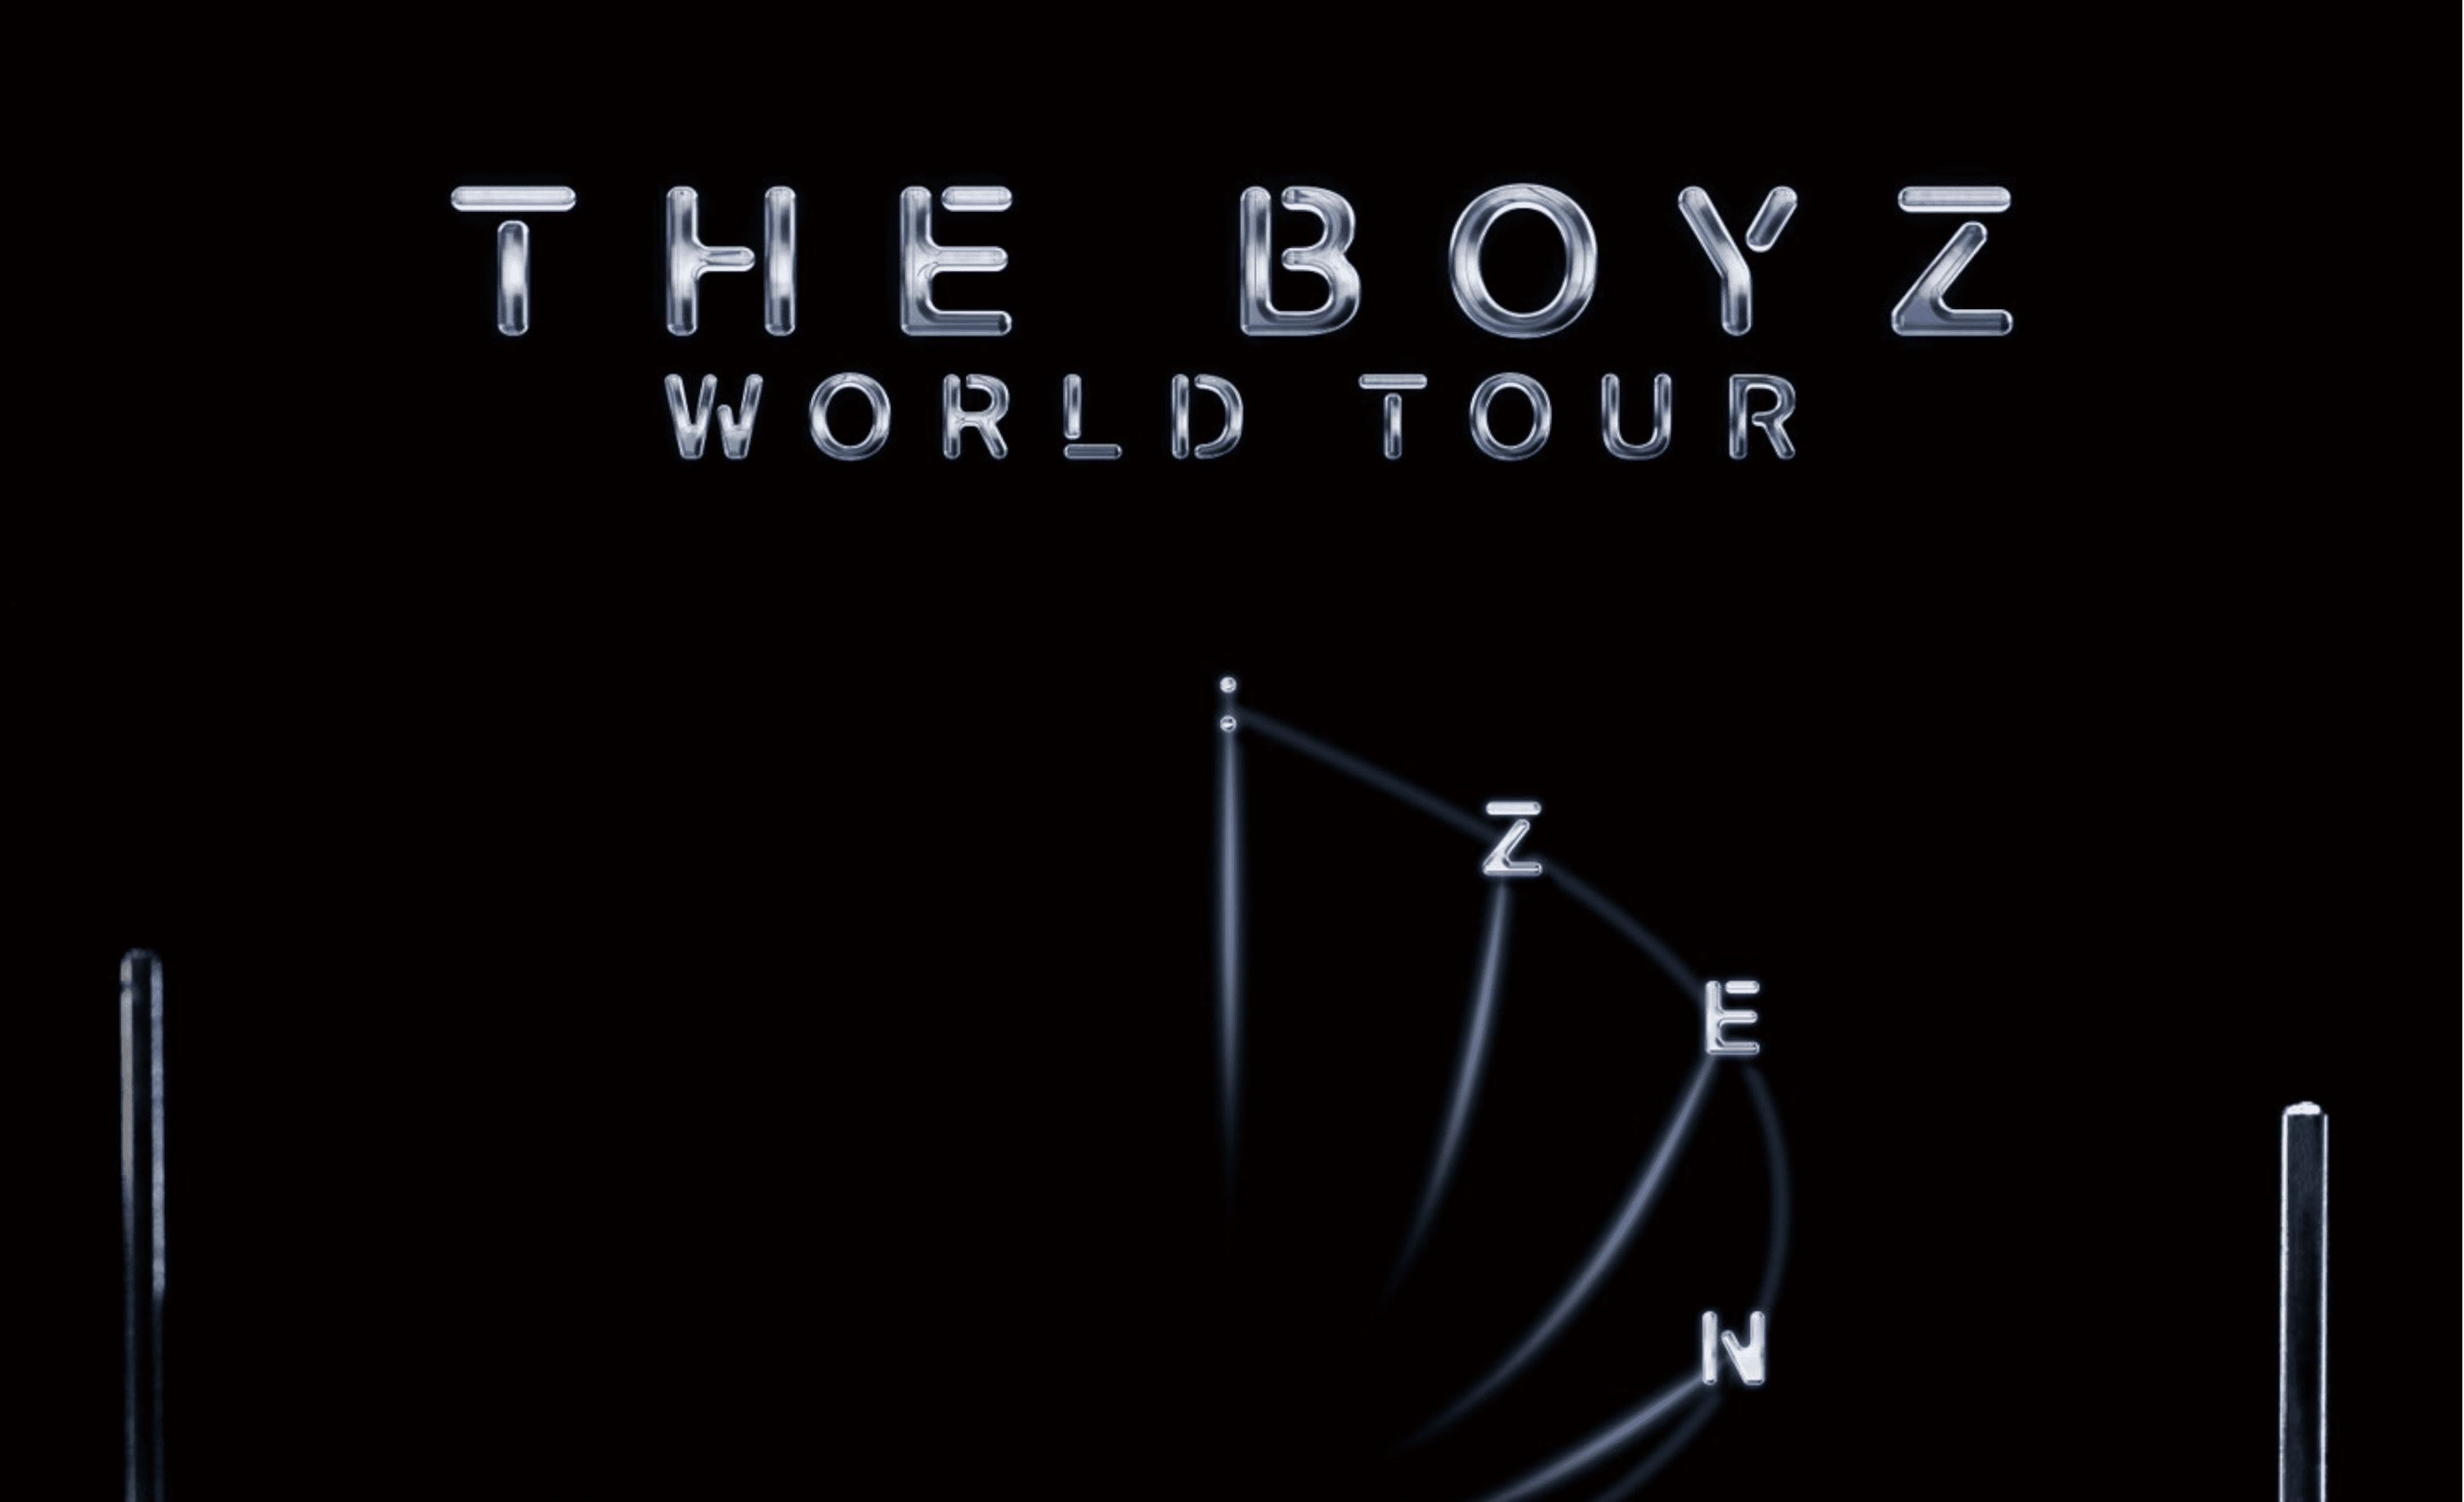 Schon im Mai startet die zweite World Tour von The Boyz: ZENERATION!